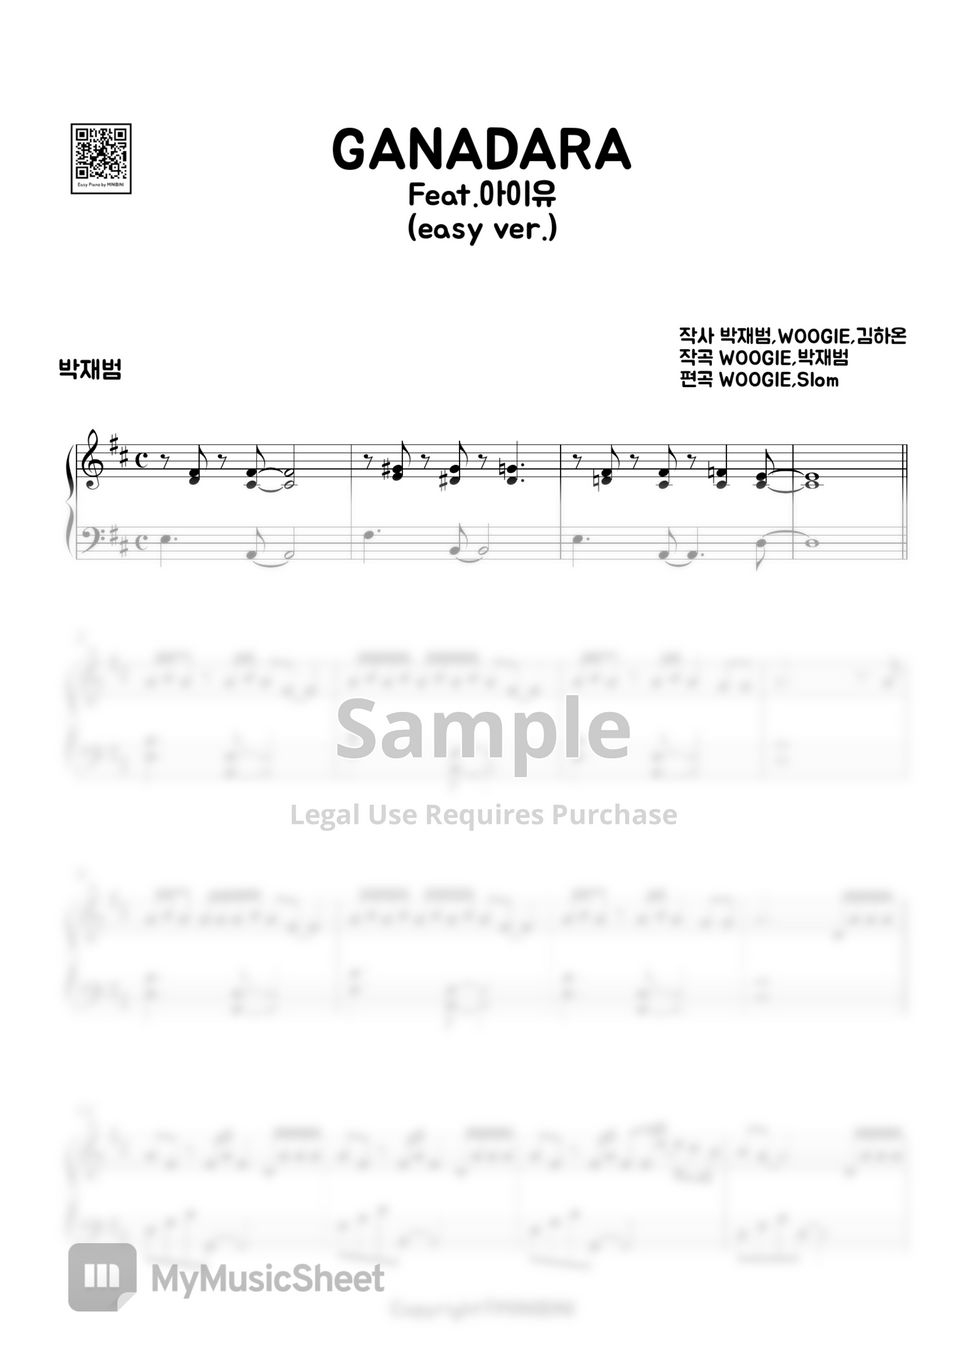 박재범 (Jay Park) - GANADARA (Feat. 아이유 IU) (Easy Version) by MINIBINI